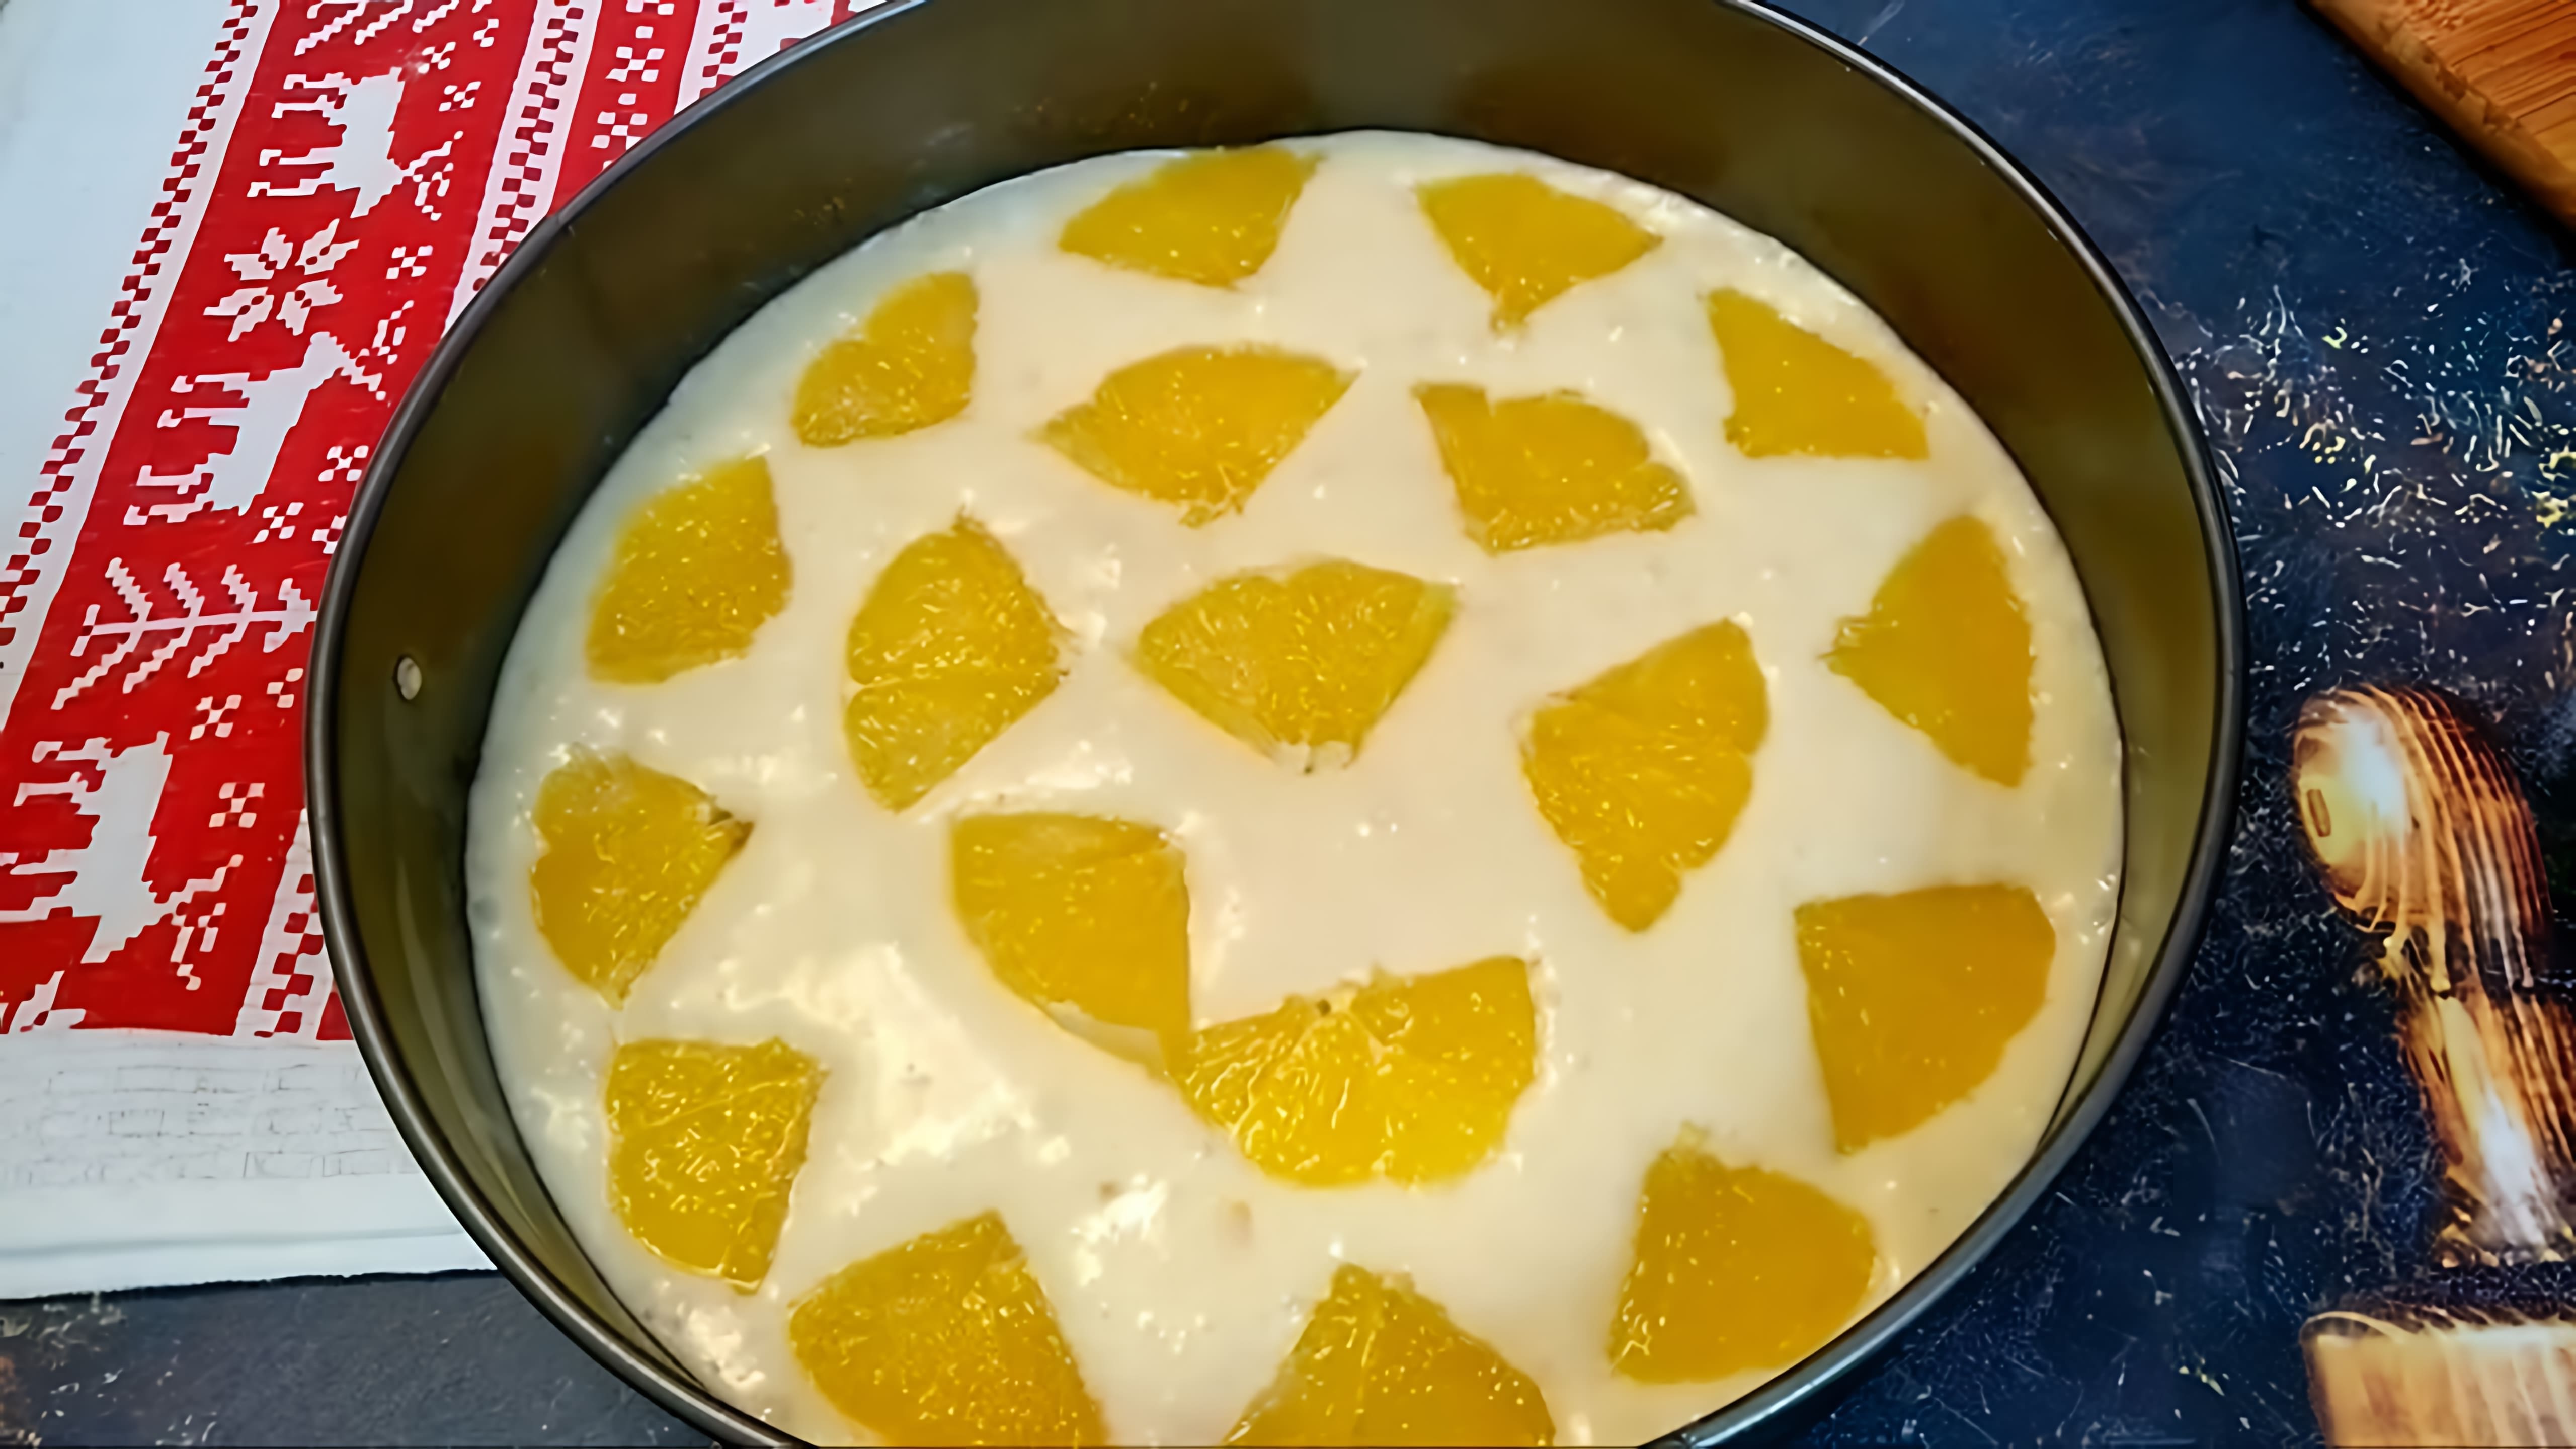 В этом видео демонстрируется рецепт апельсинового пирога